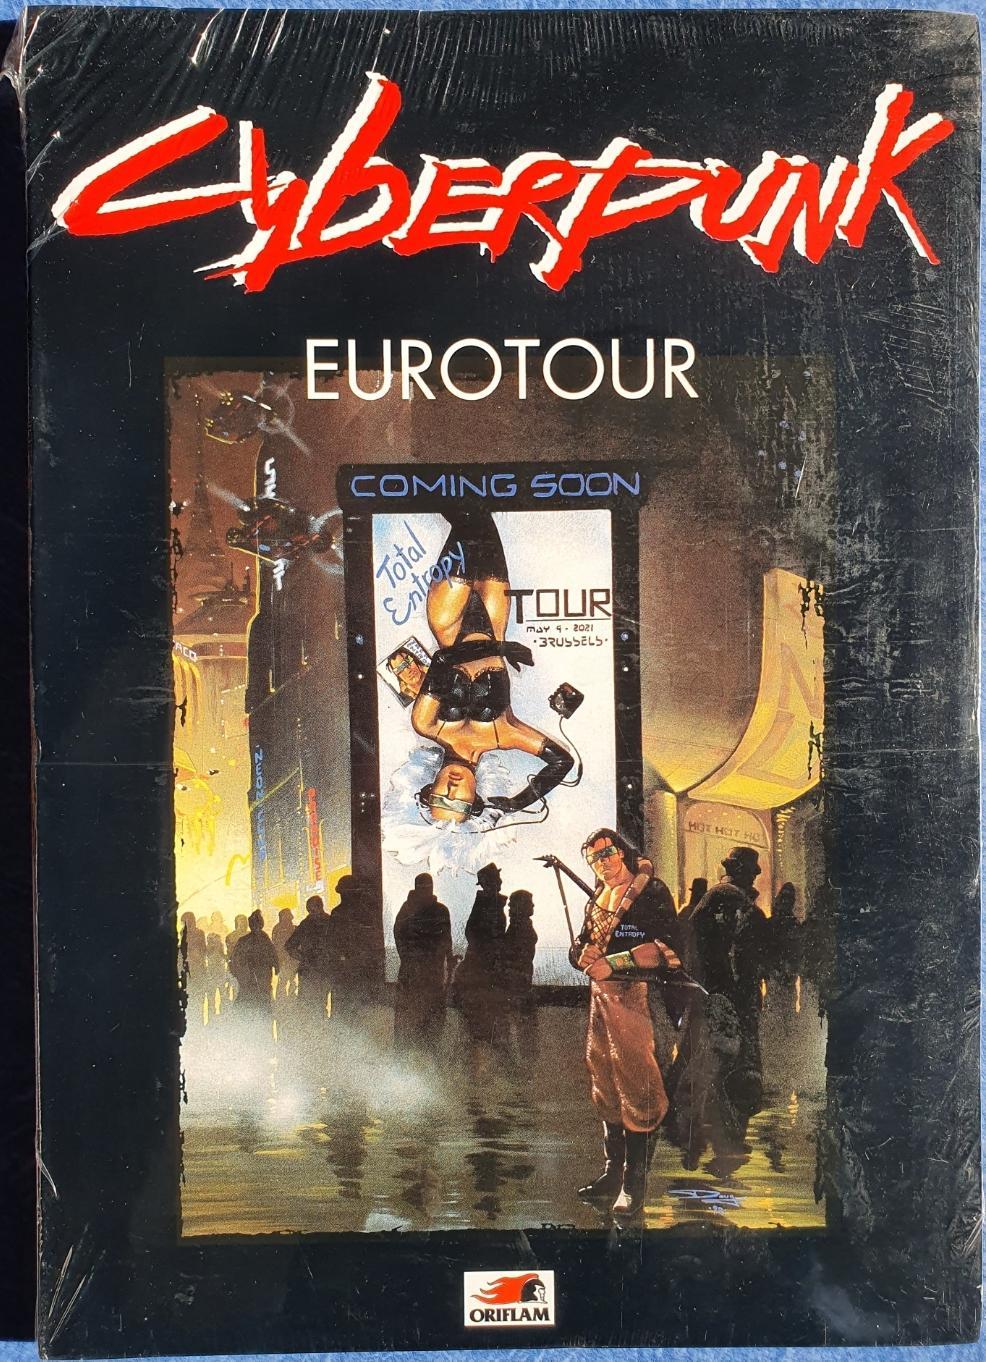 Cyberpunk 2020 - Eurotour